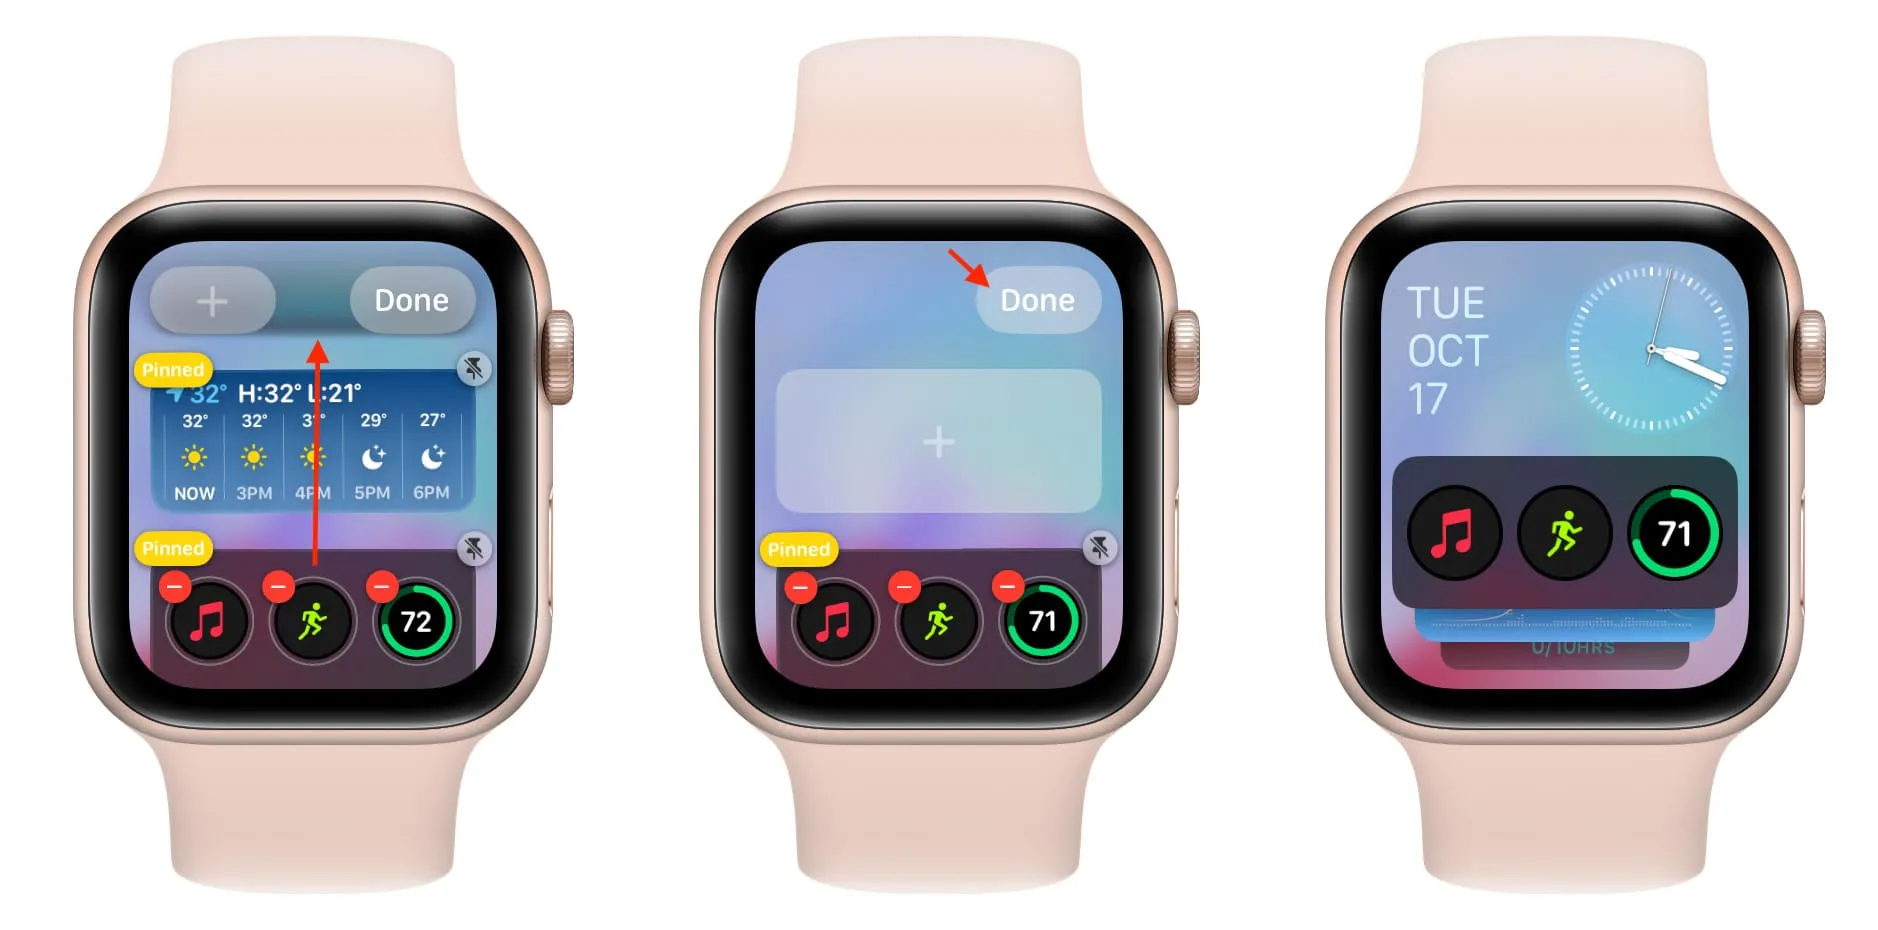 Змініть порядок віджетів на Apple Watch